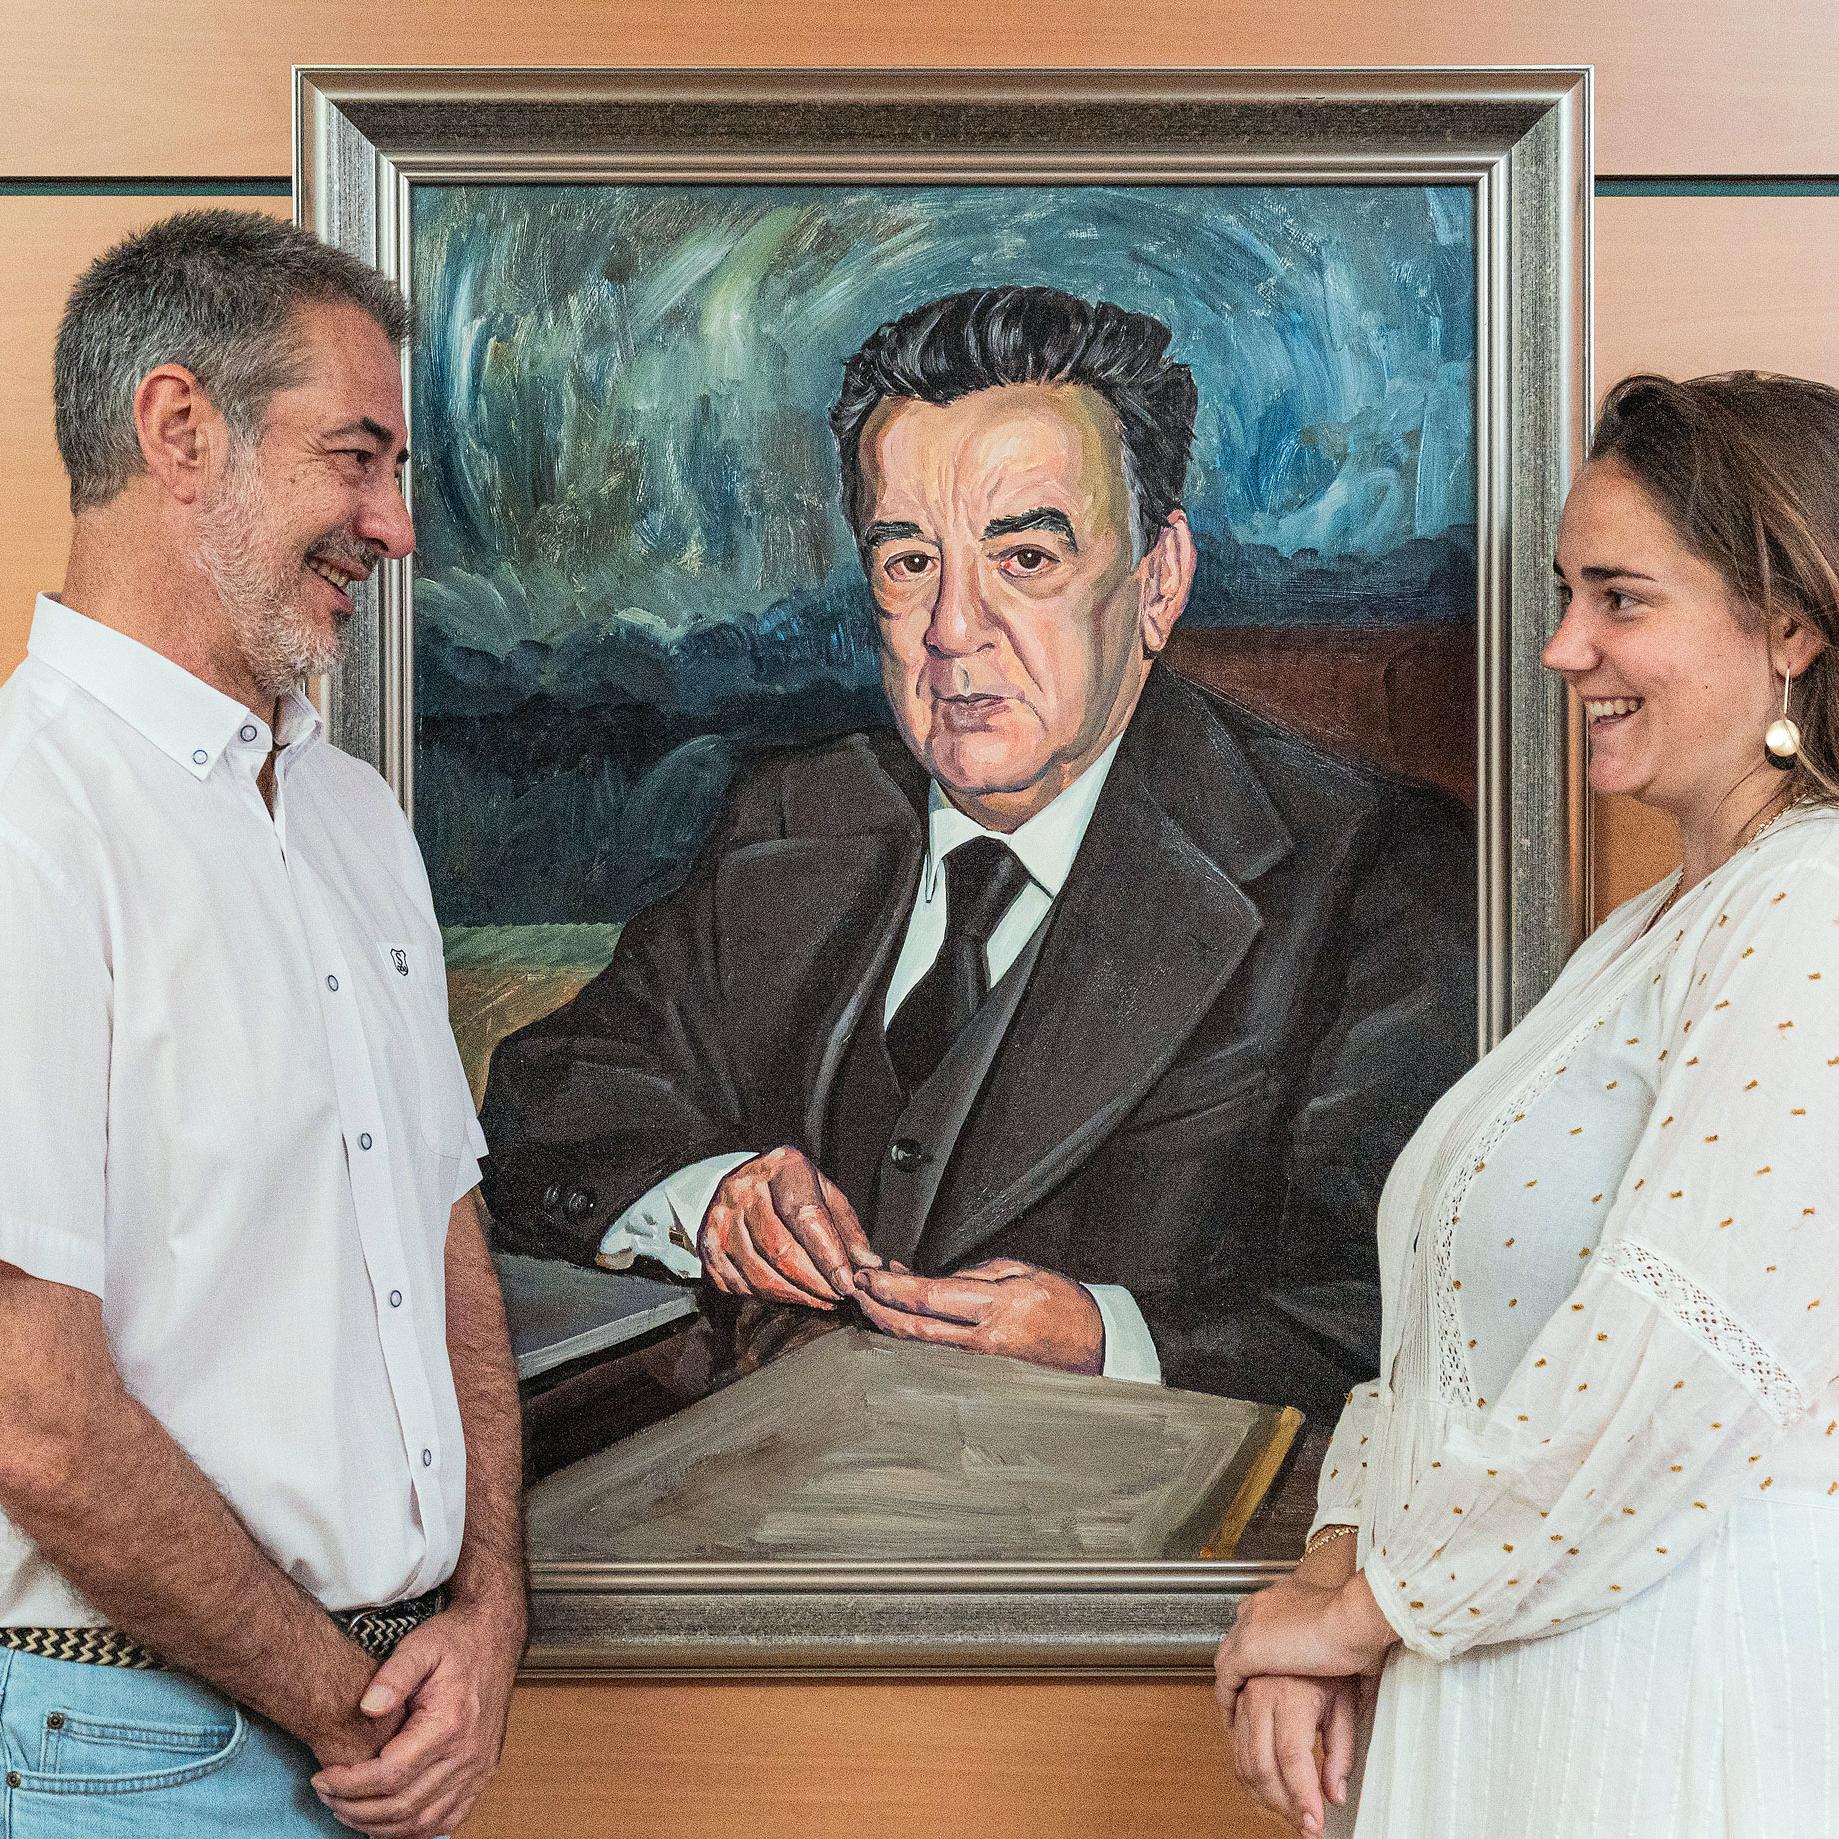 Empleados de Ineco más antiguo y más reciente con retrato del fundador, Carlos Roa.